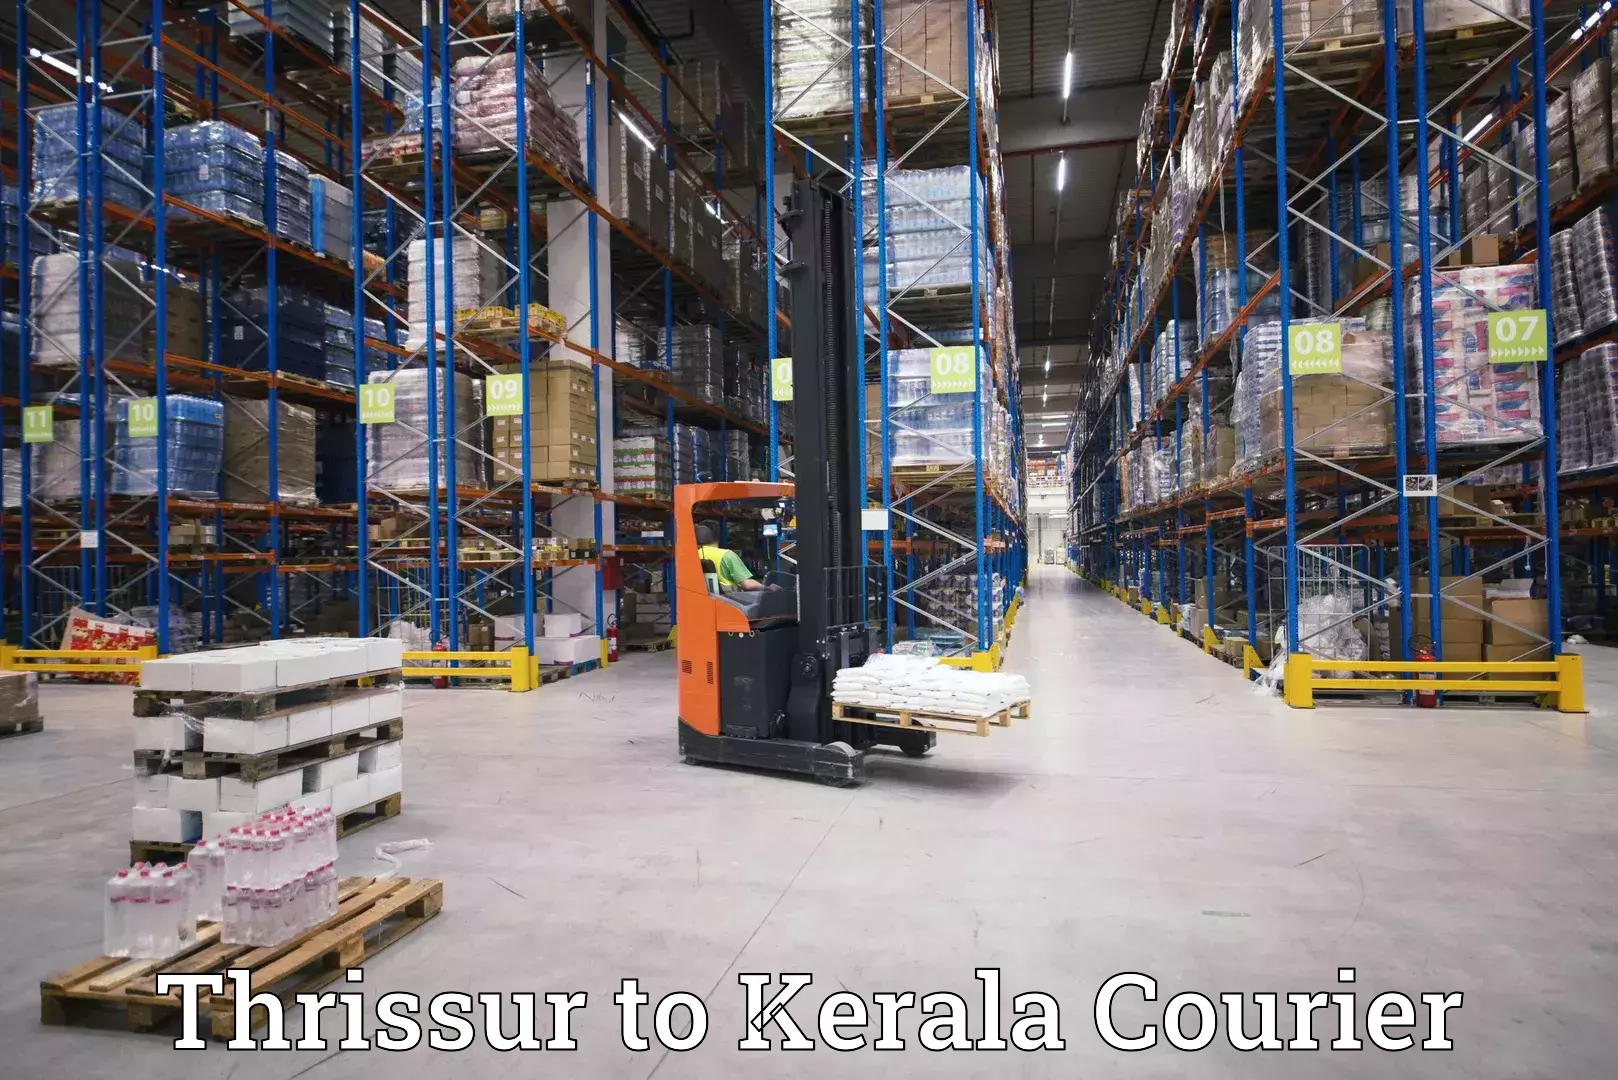 High-speed parcel service Thrissur to Narikkuni